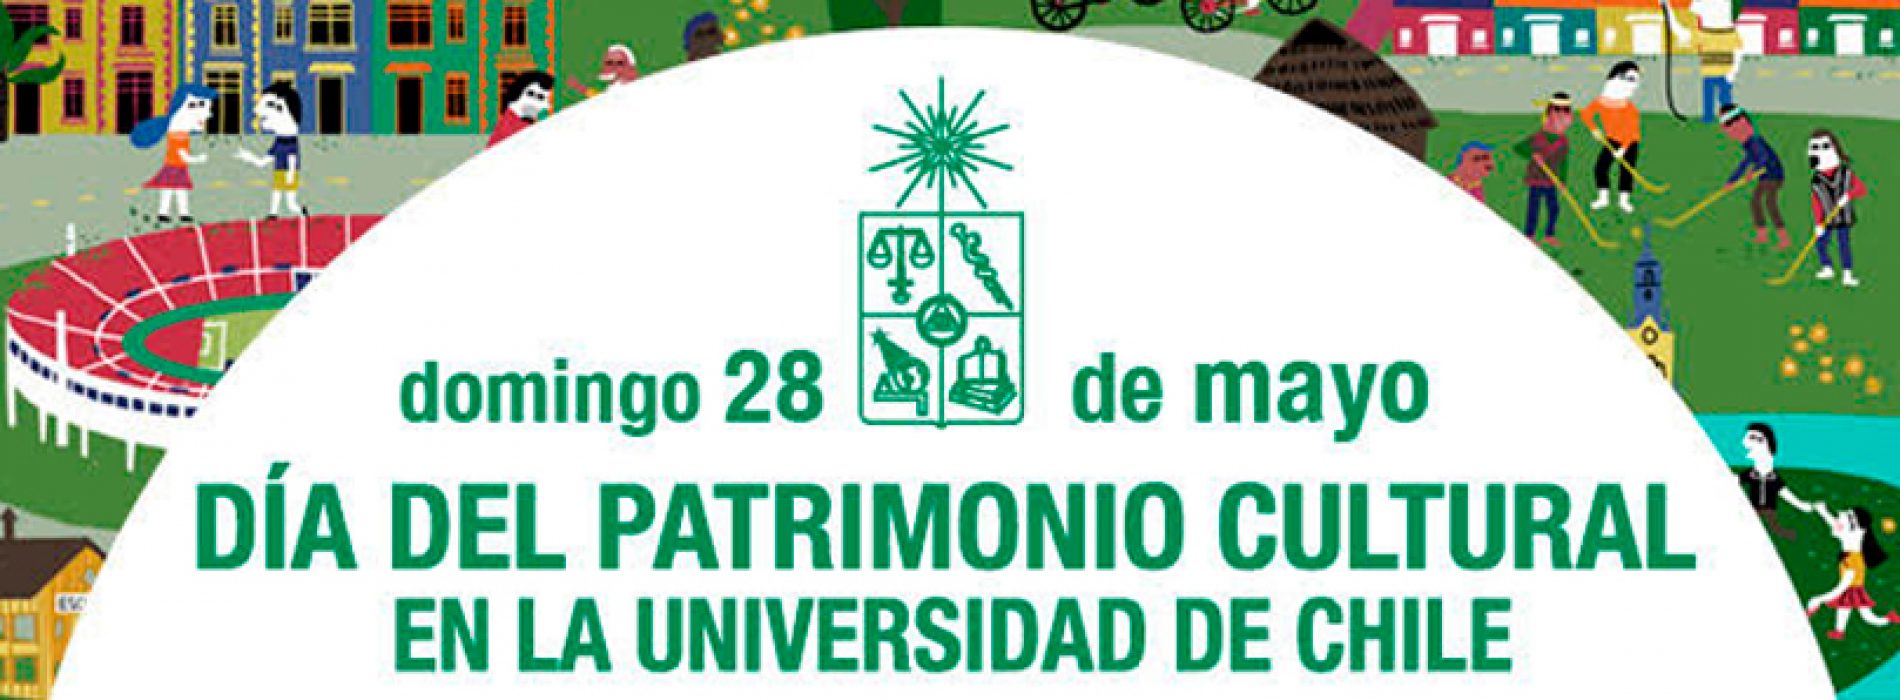 Día del Patrimonio Cultural en la Universidad de Chile